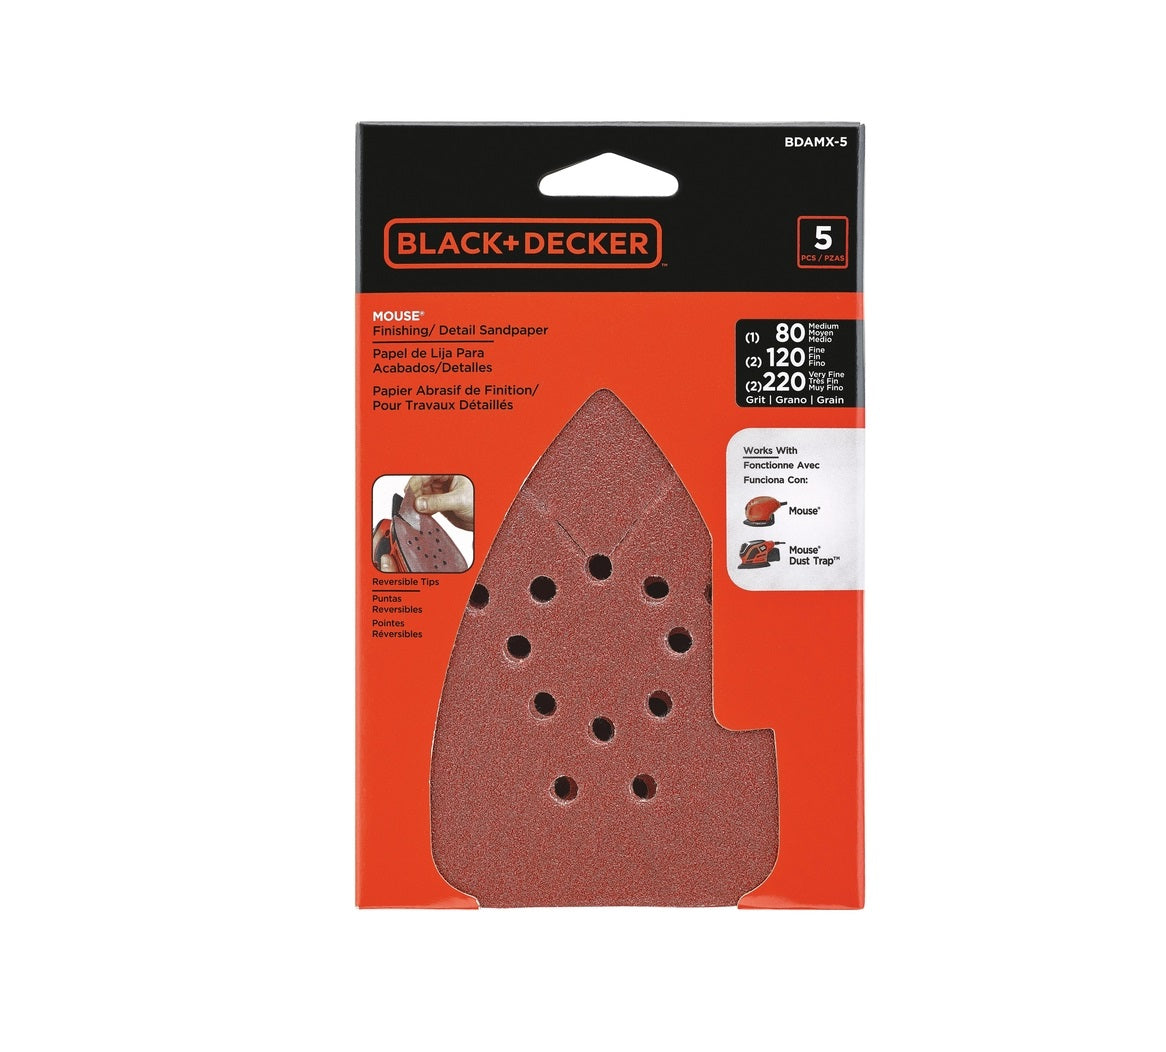 Black & Decker BDAMX-5 Mouse Assorted Sandpaper Kit, Pack of 5